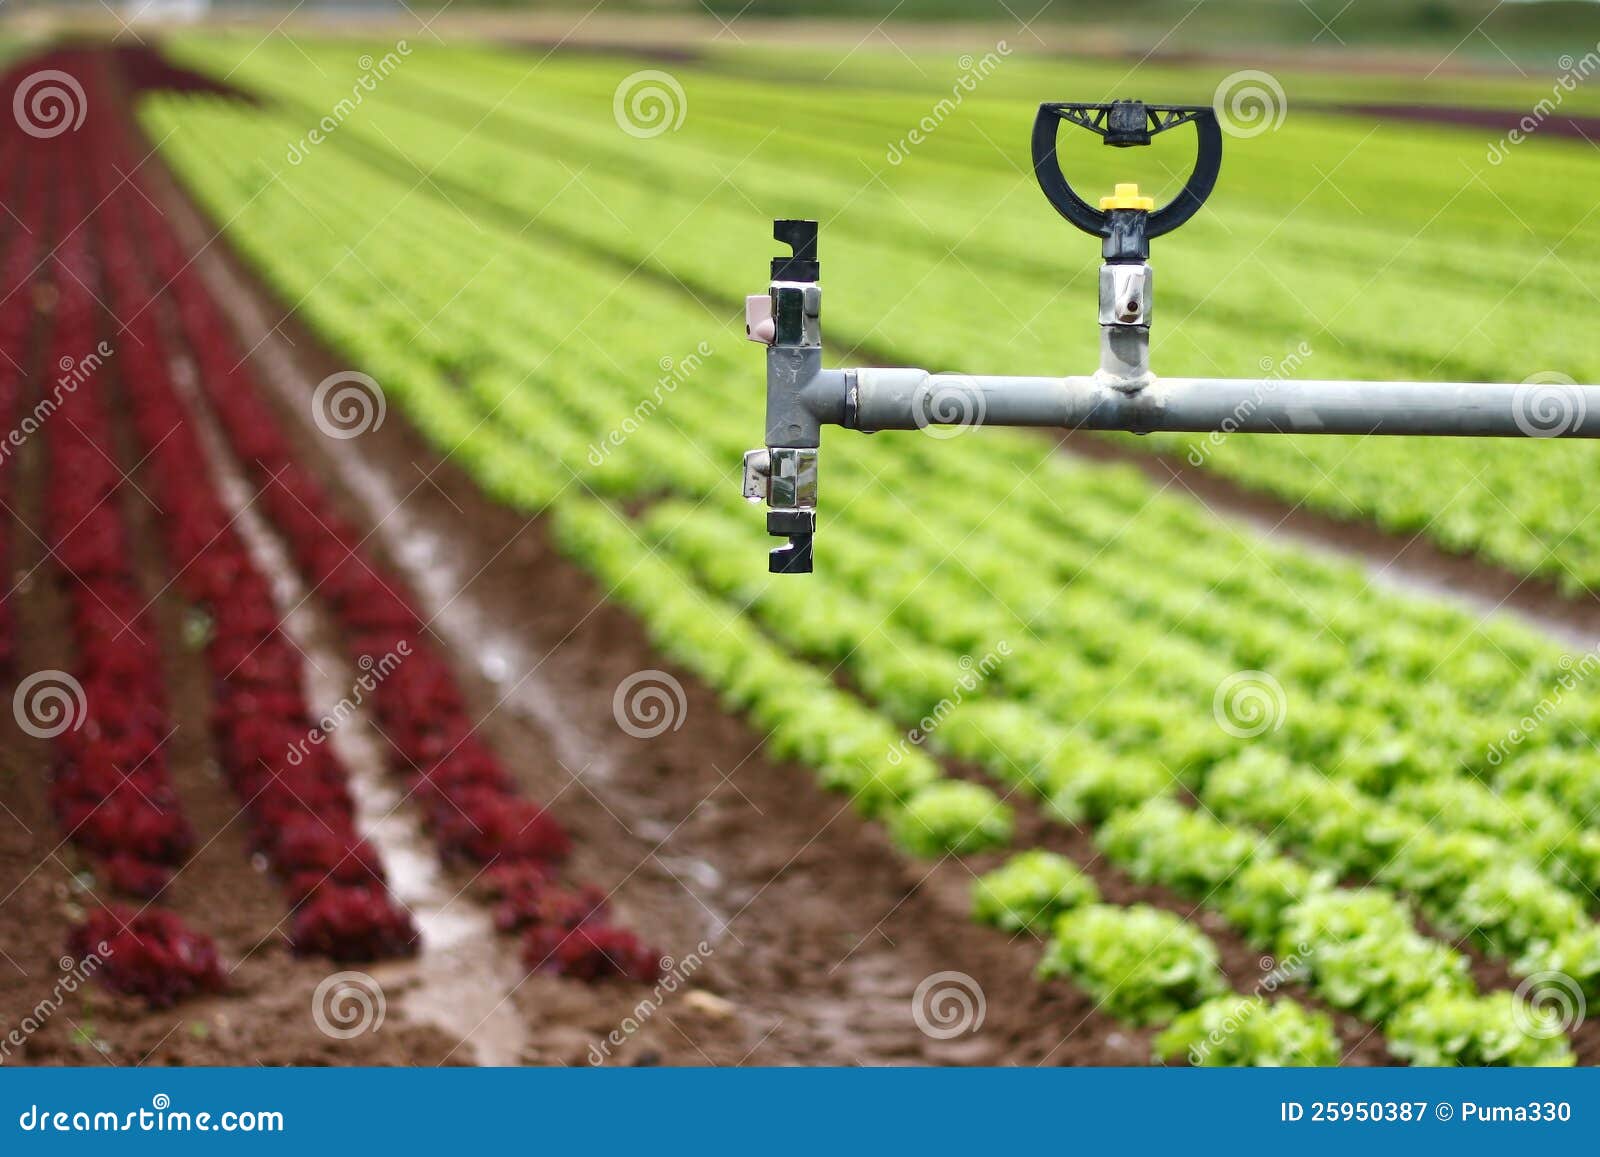 modern irrigation system - details